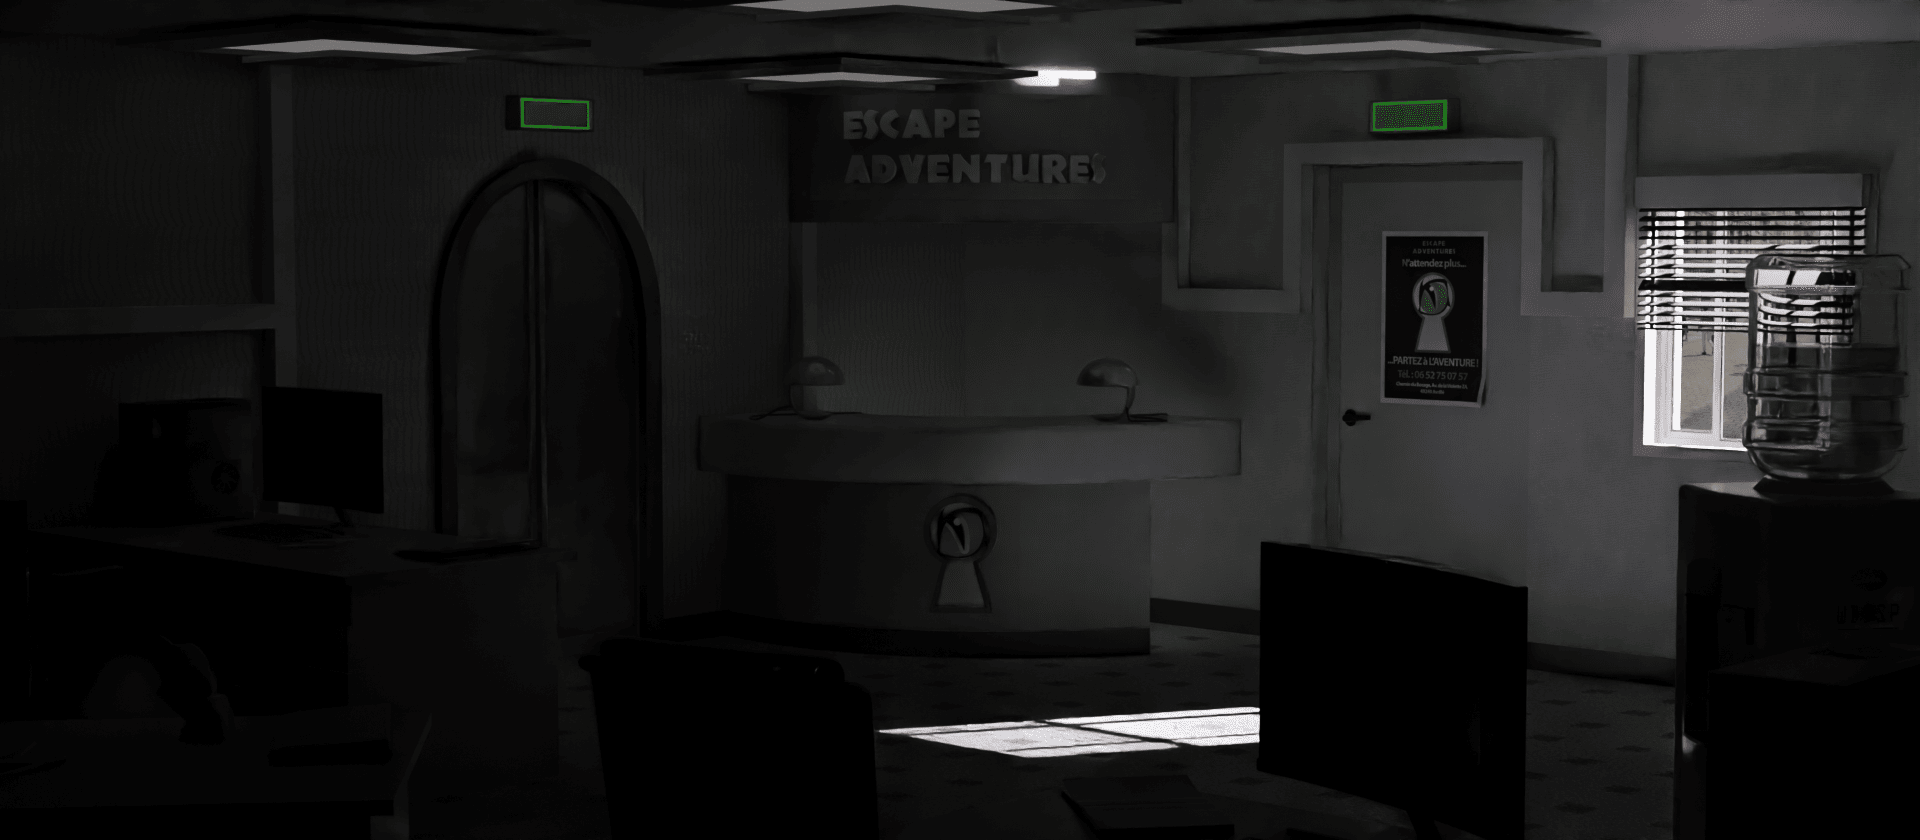 image de fond d'accueil du site de la société d'escape game escape adventures Angers représentant un bureau modélisé en 3D de nuit